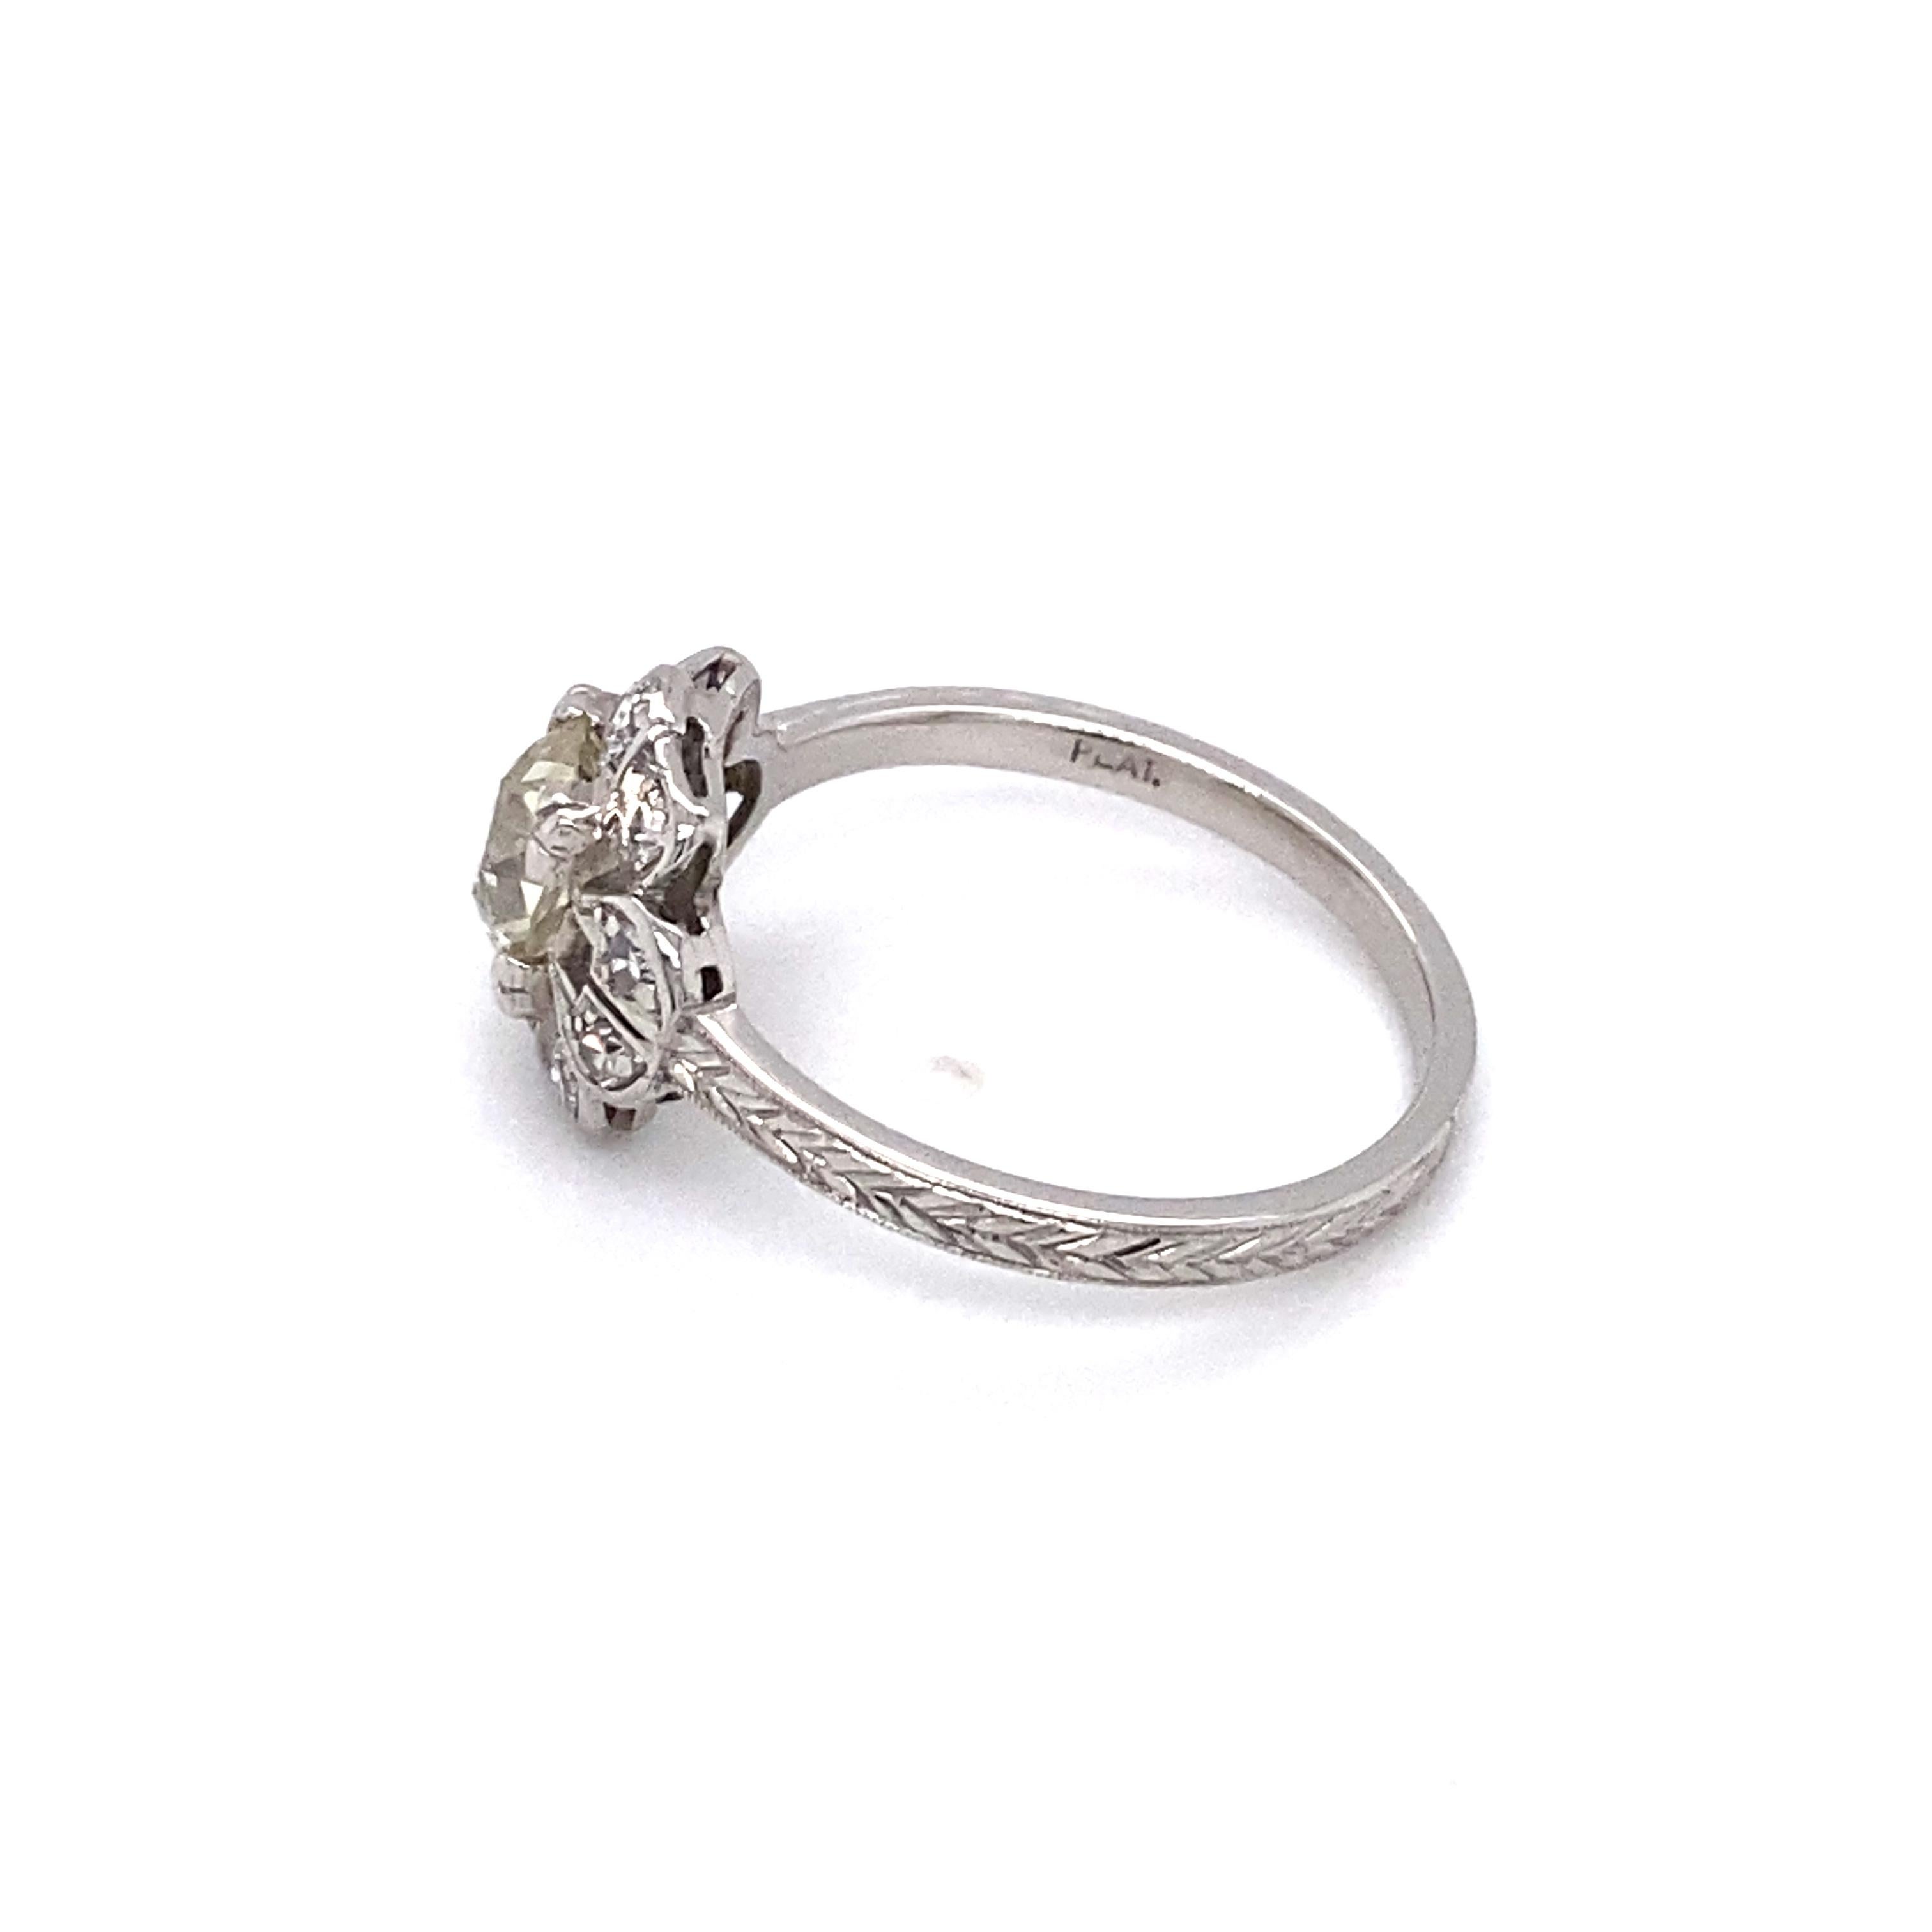 Circa 1920s Art Deco 0.80 Carat Diamond Engagement Ring in Platinum In Excellent Condition For Sale In Atlanta, GA